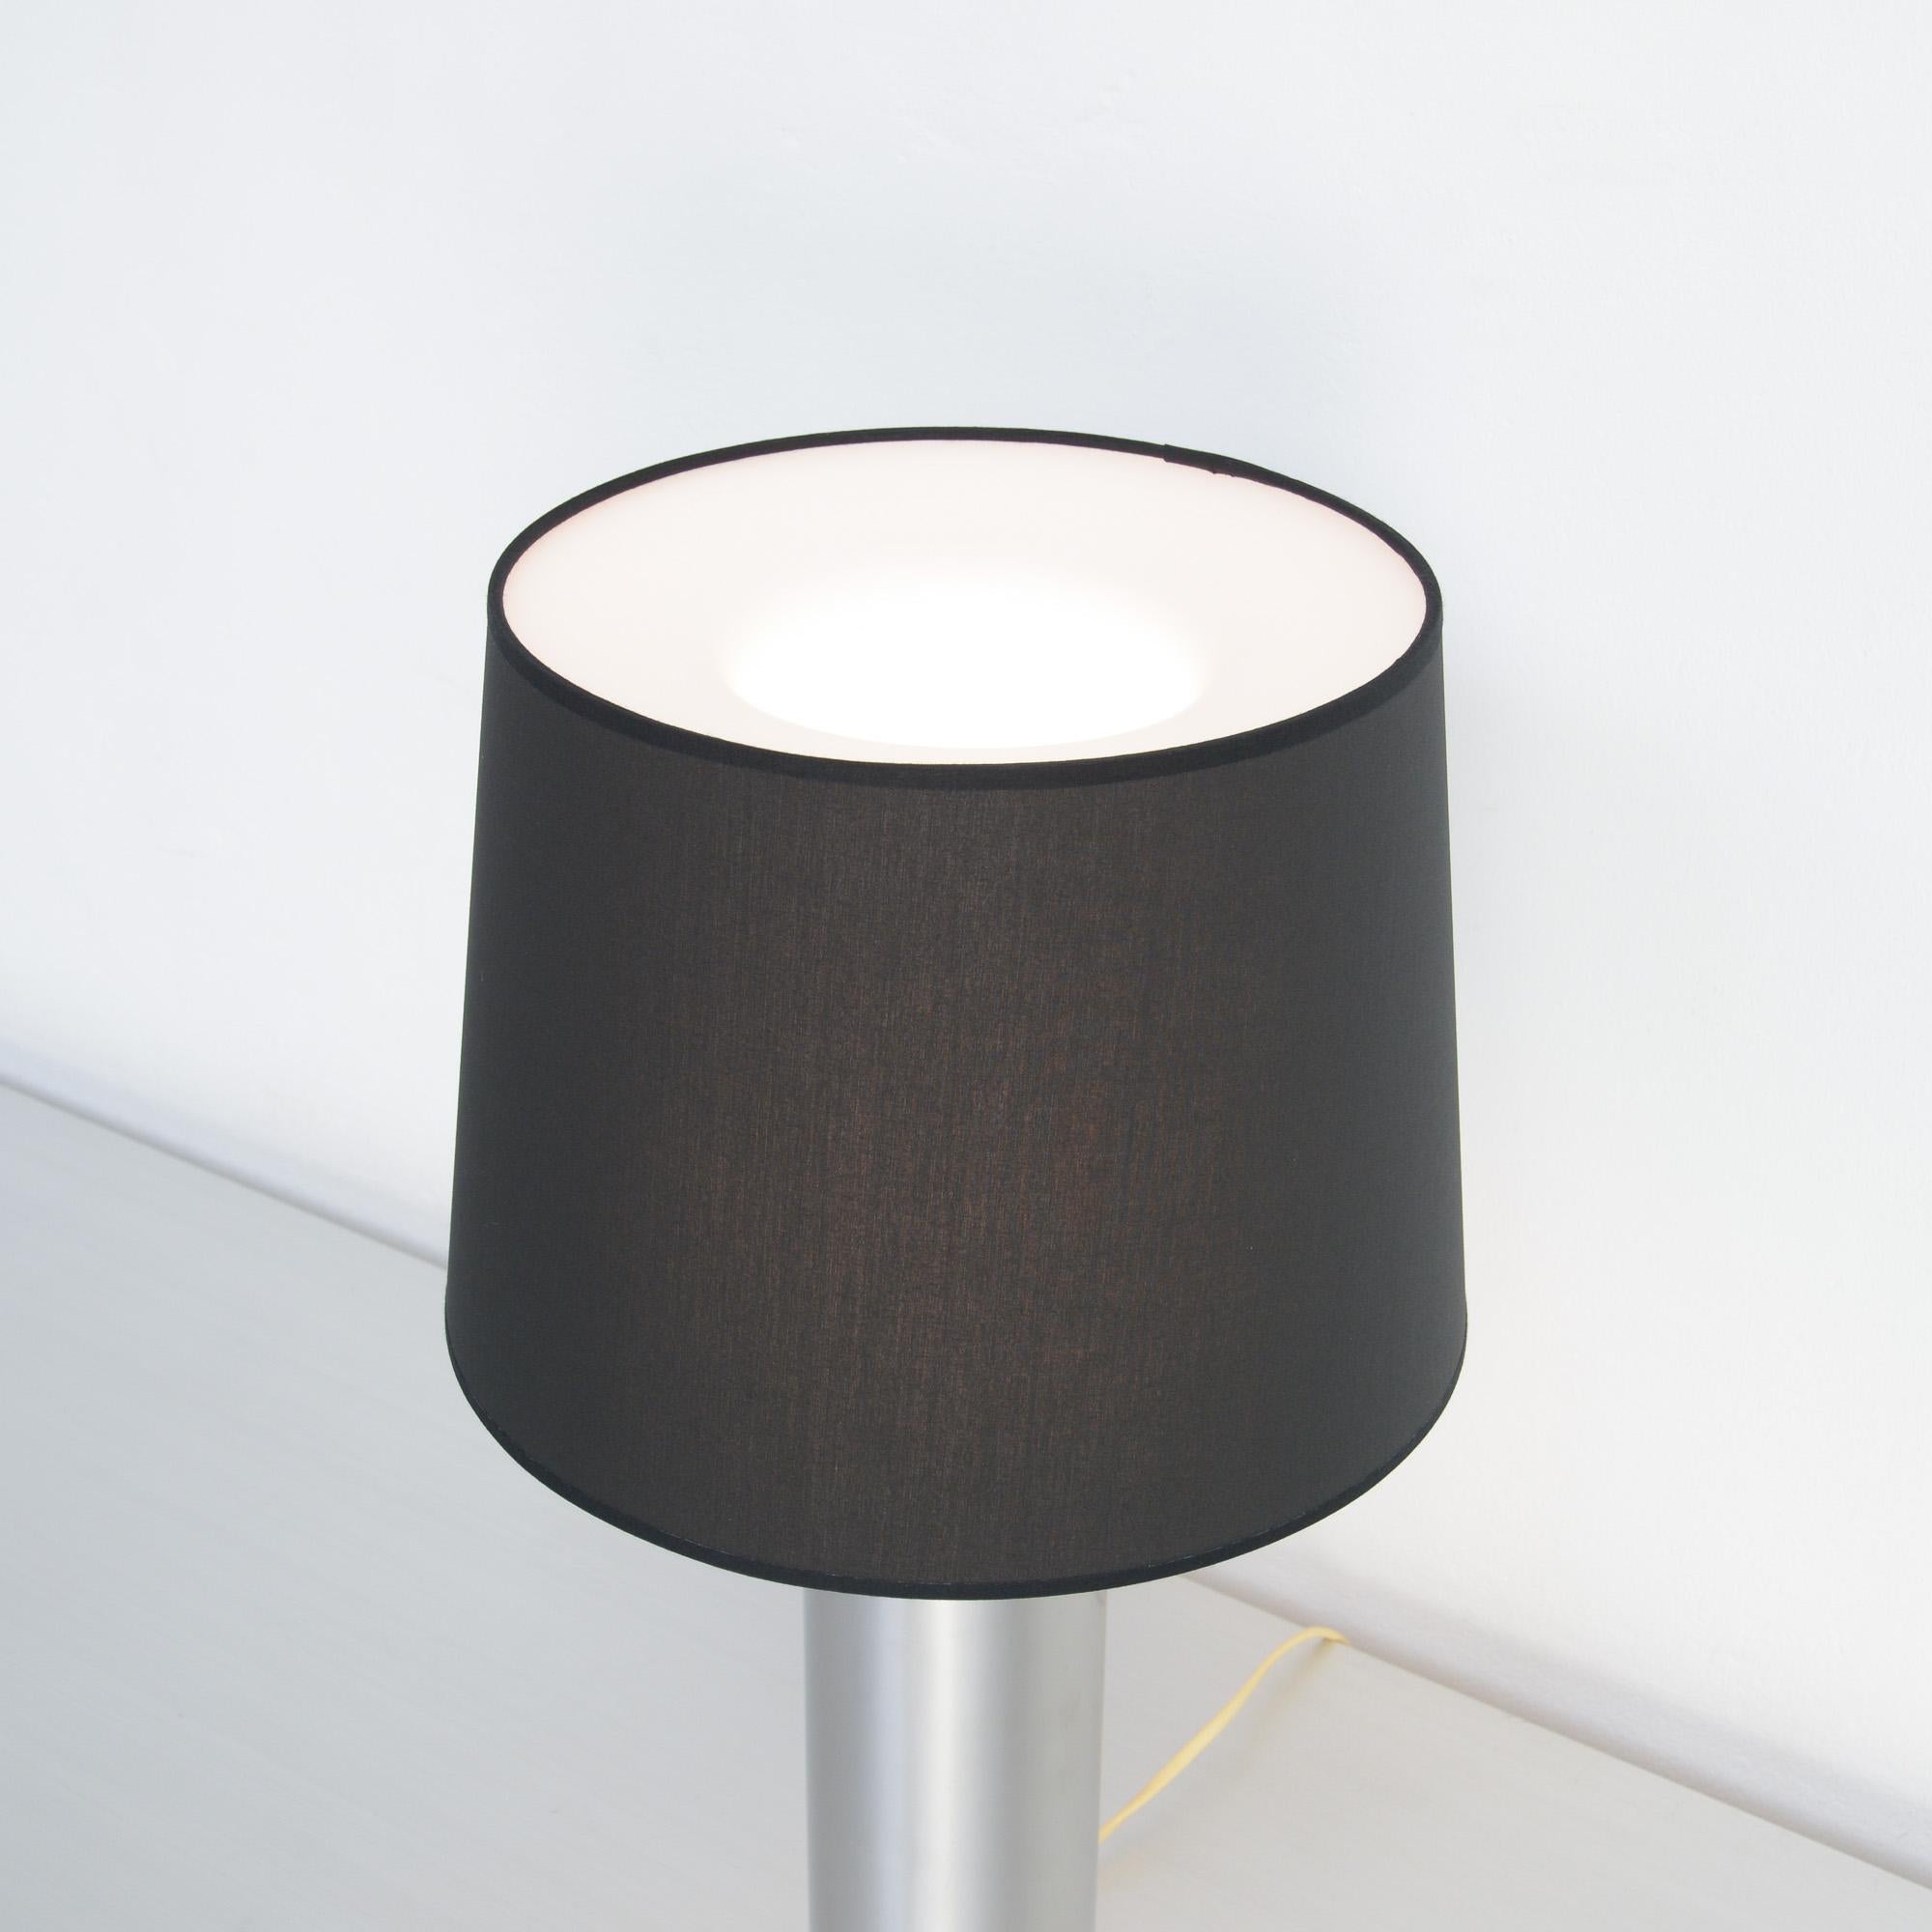 Cette lampe de table scandinave minimaliste a été conçue par Uno & Östen Kristiansson pour Luxus en Suède dans les années 1960.
Cette lampe est composée d'un cylindre en acier chromé avec des détails en bois de rose. Le diffuseur en plexiglas blanc